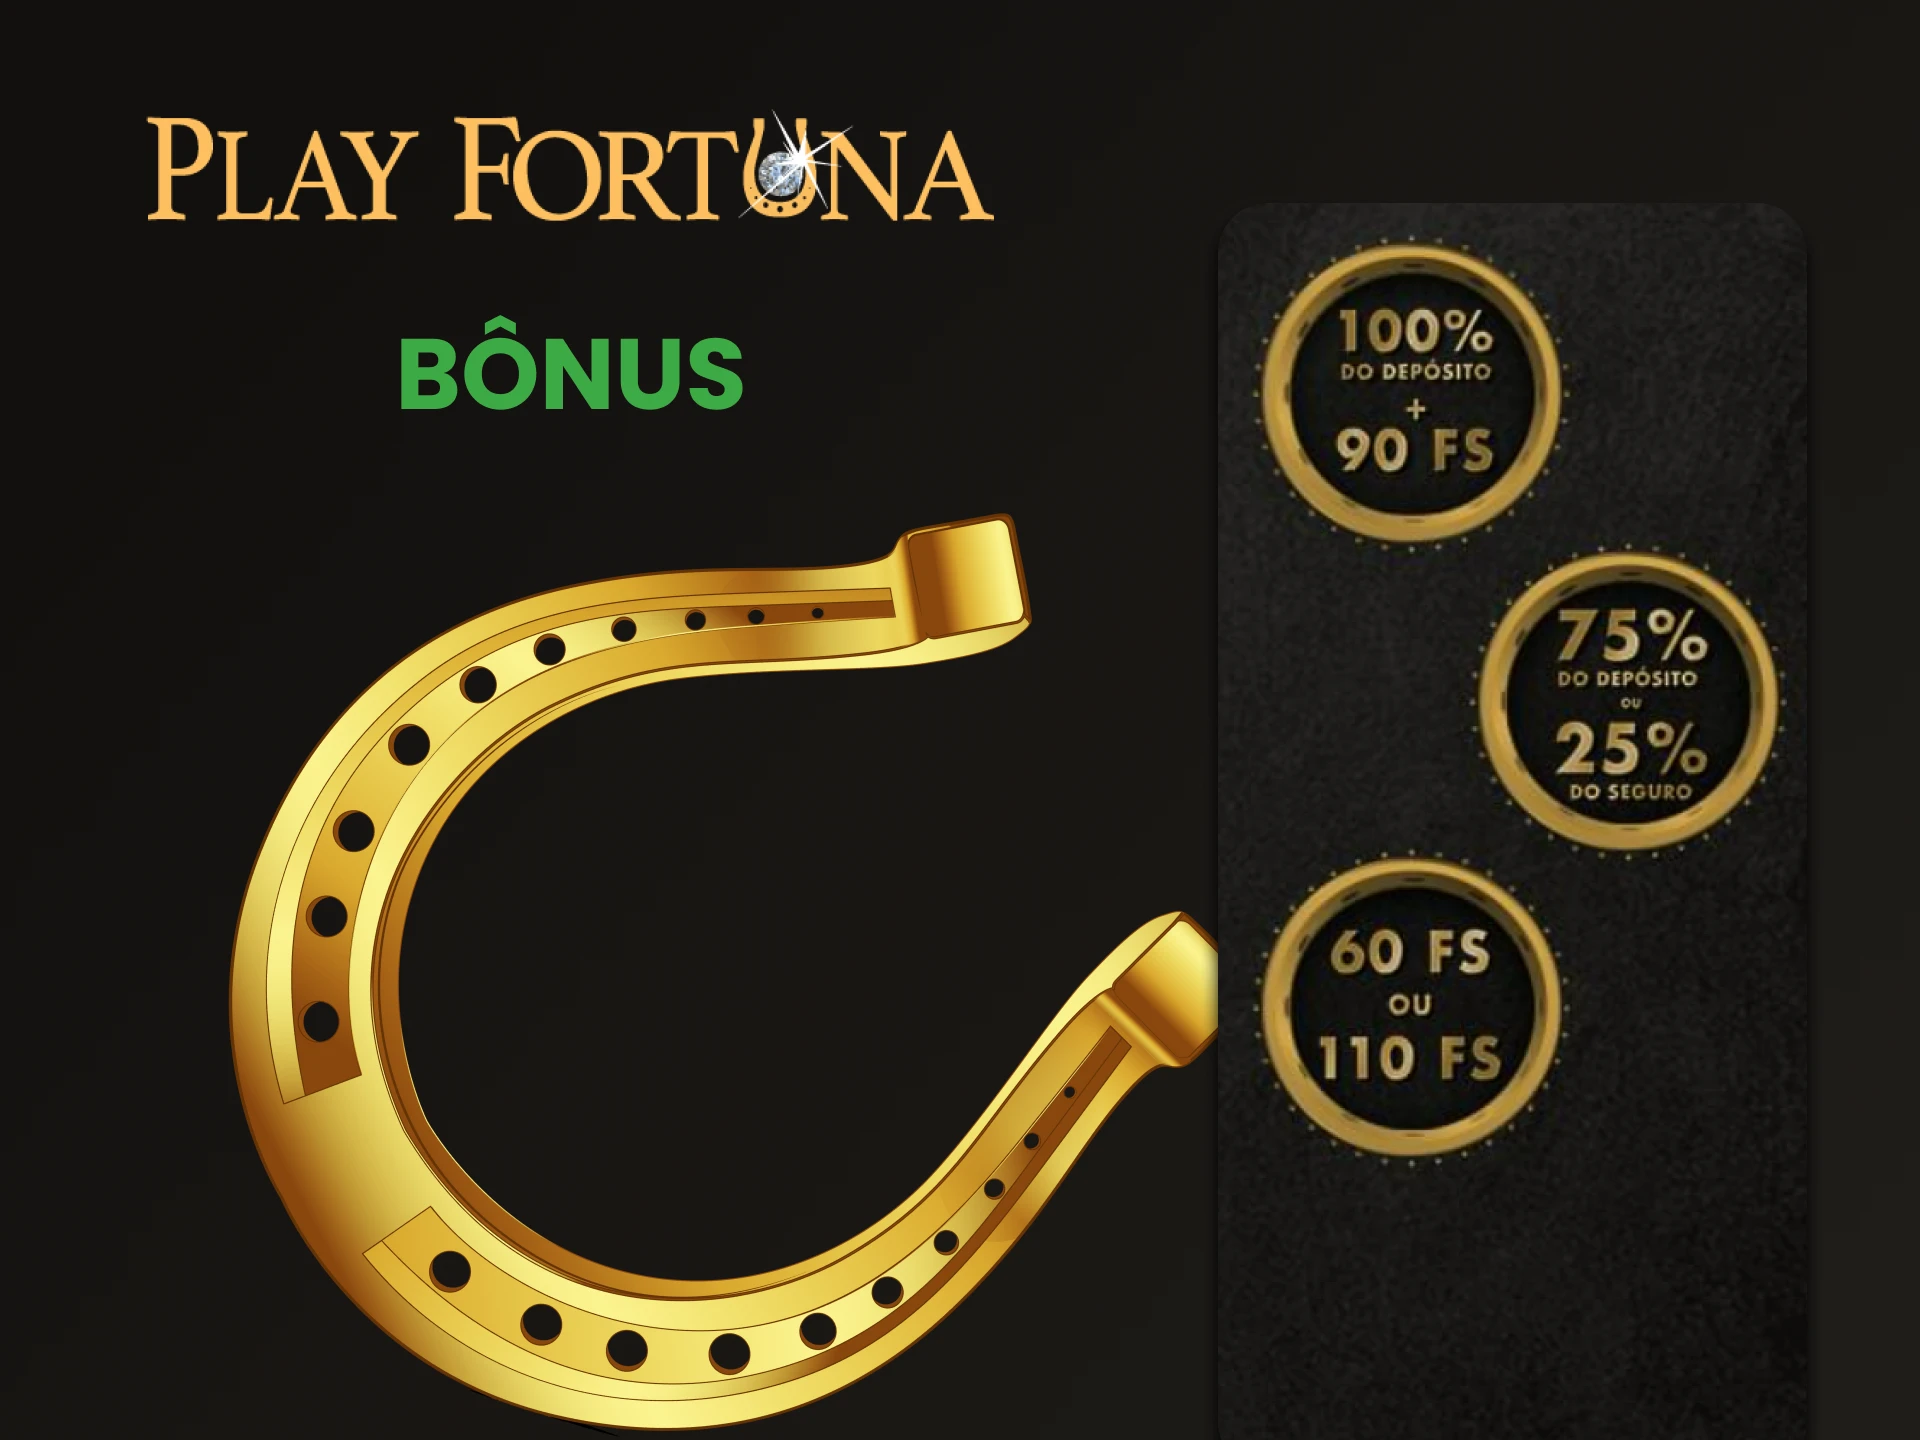 Play Fortuna oferece bônus por jogar na loteria.